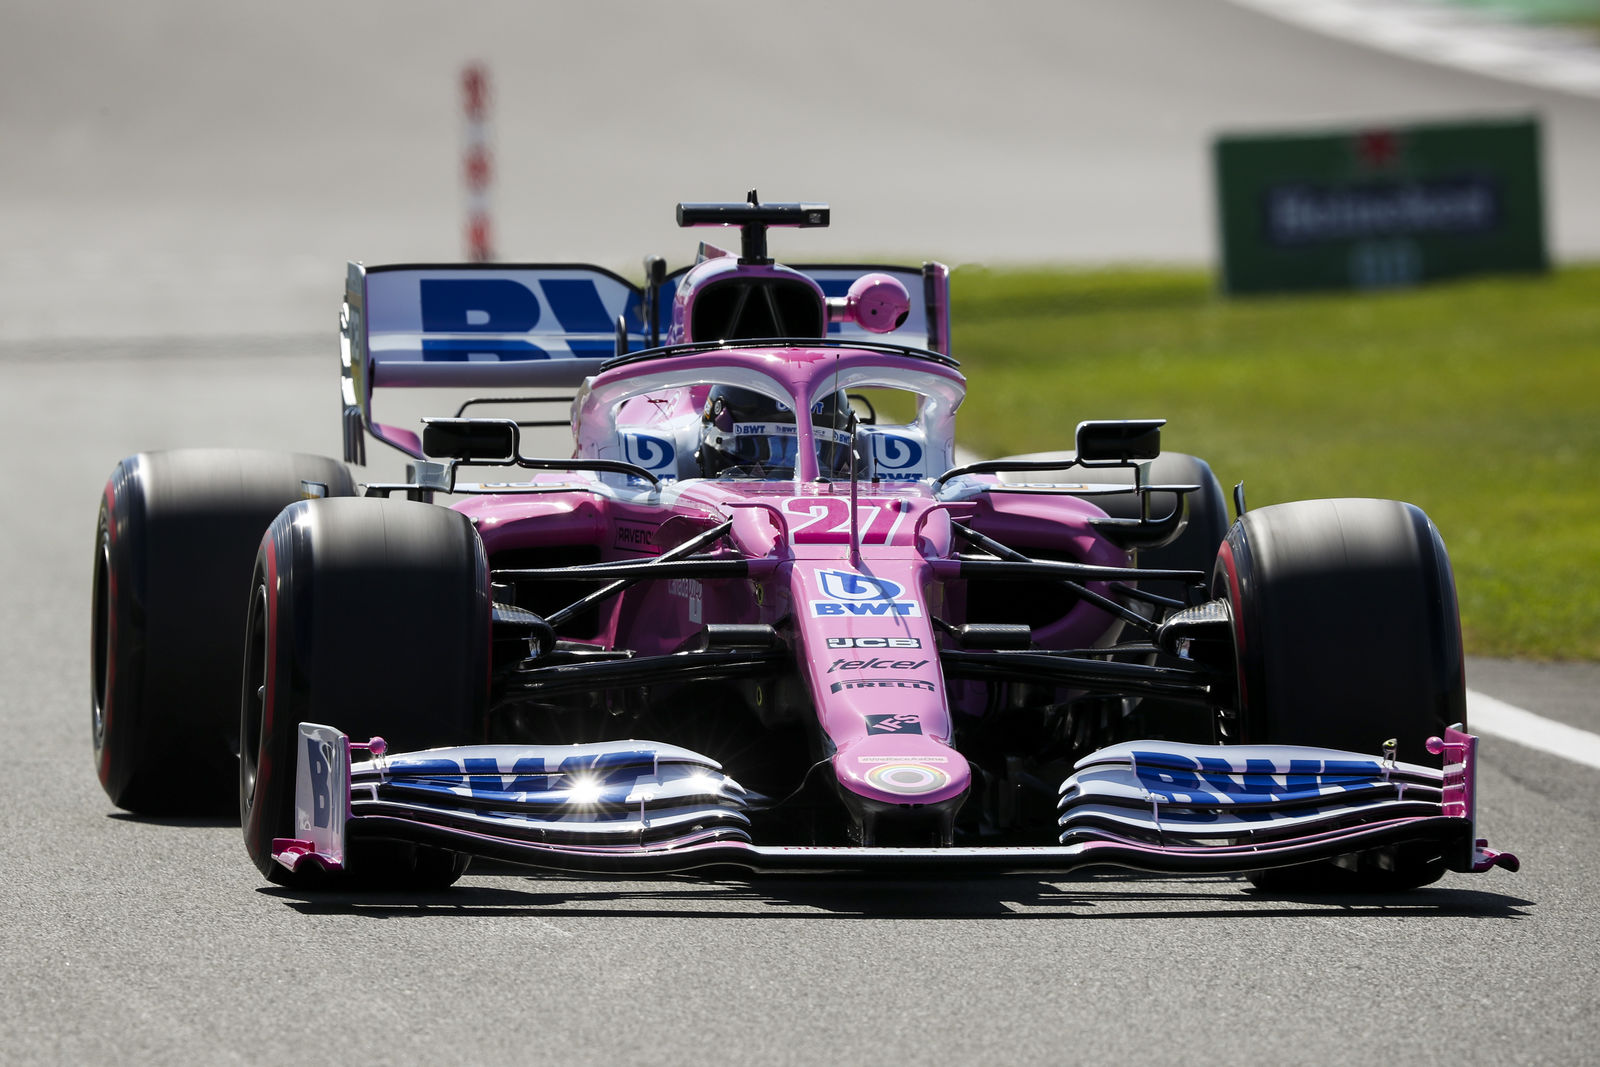 The 'pink' Mercedes saga continues